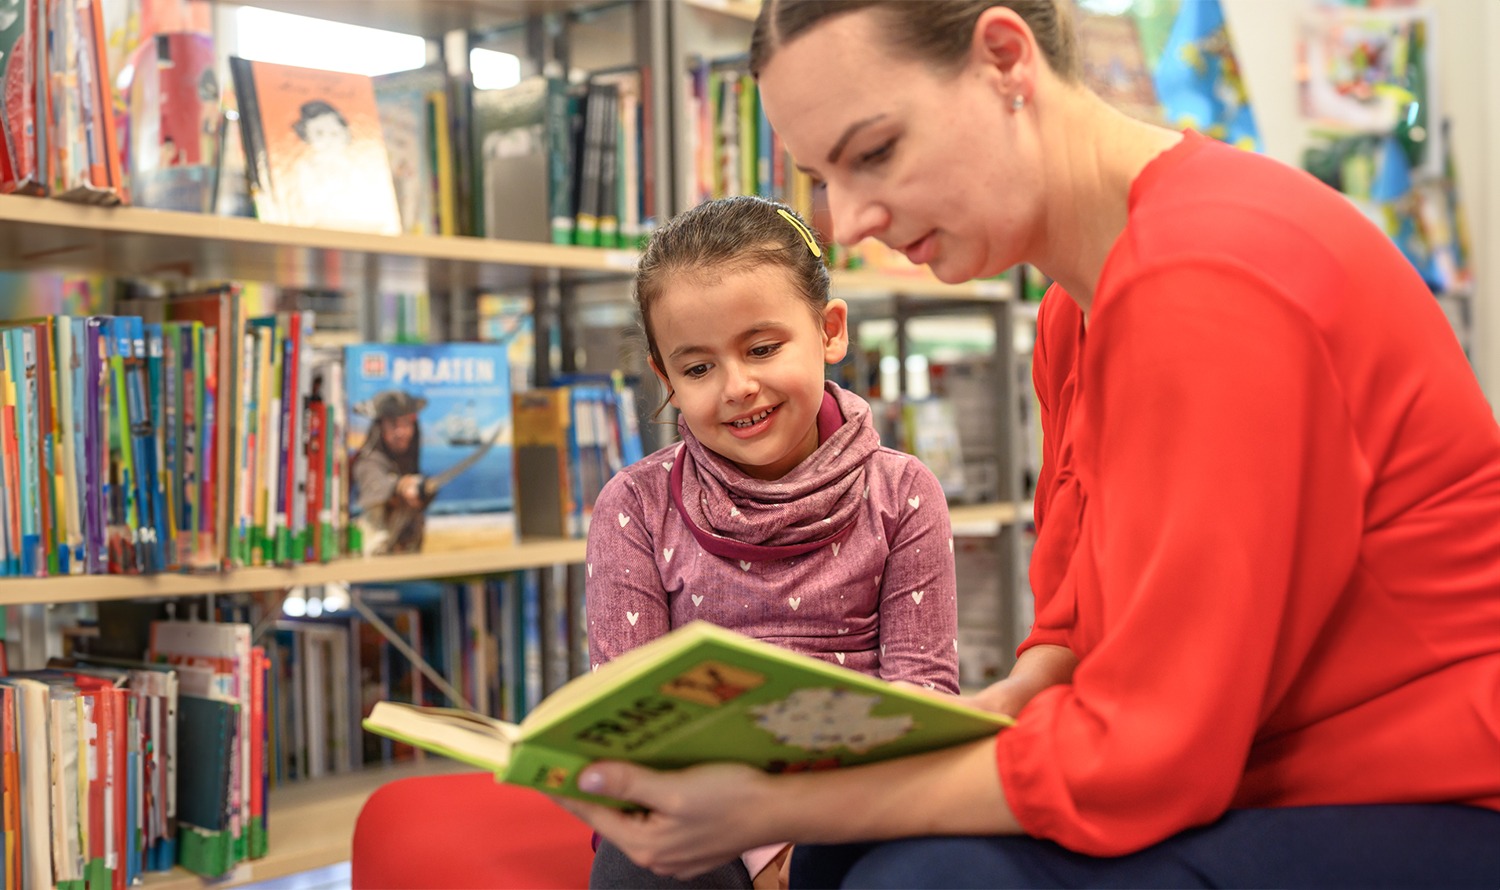 امرأة تقرأ كتابًا لفتاة صغيرة في المكتبة بينما يبتسم كلاهما.